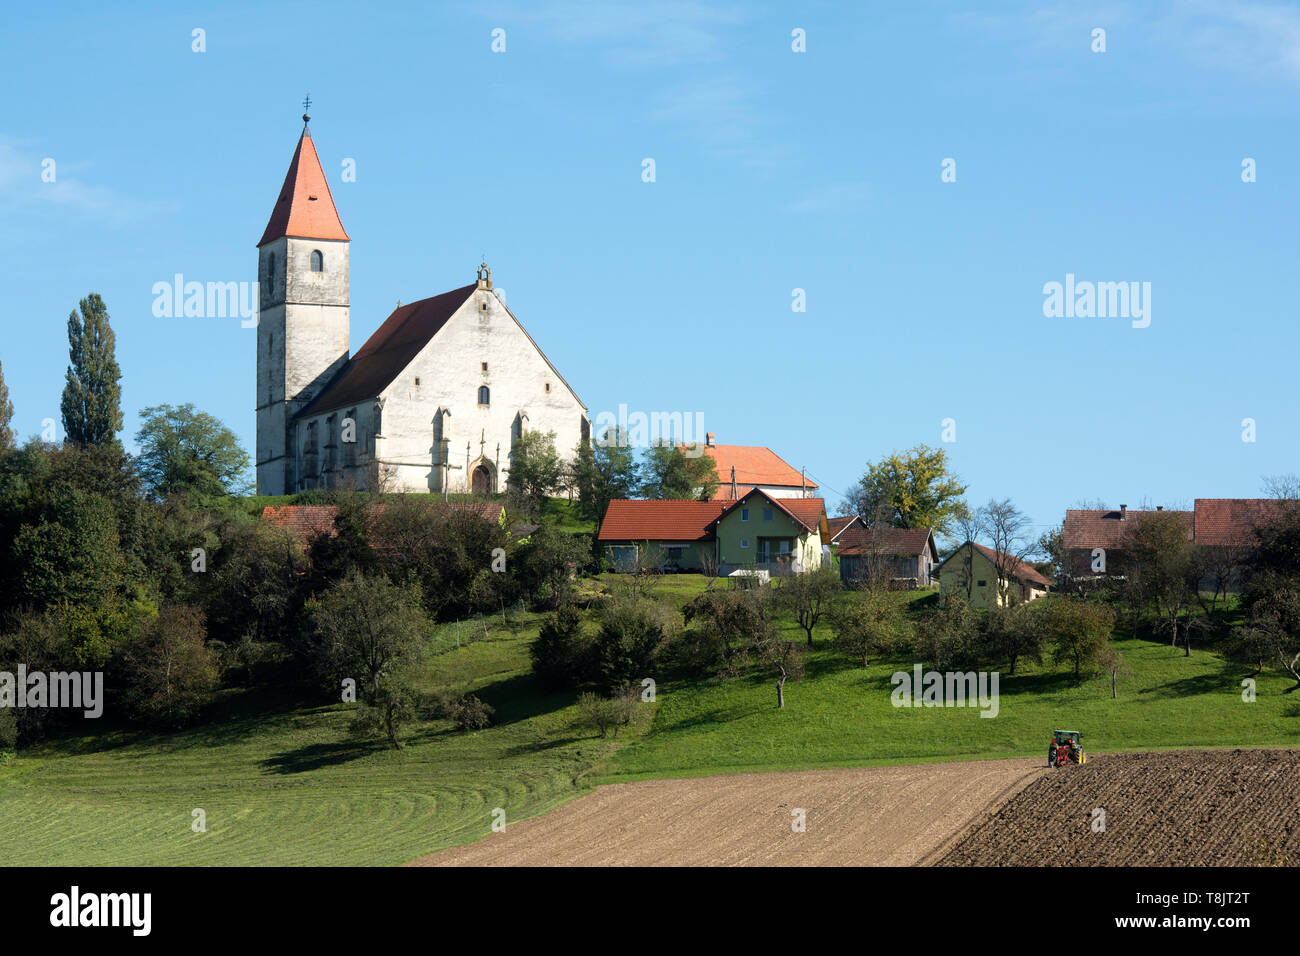 Slowenien, Benedikt, Kirche zu den Heiligen Drei Königen in Sveti Trije Kralji Foto Stock